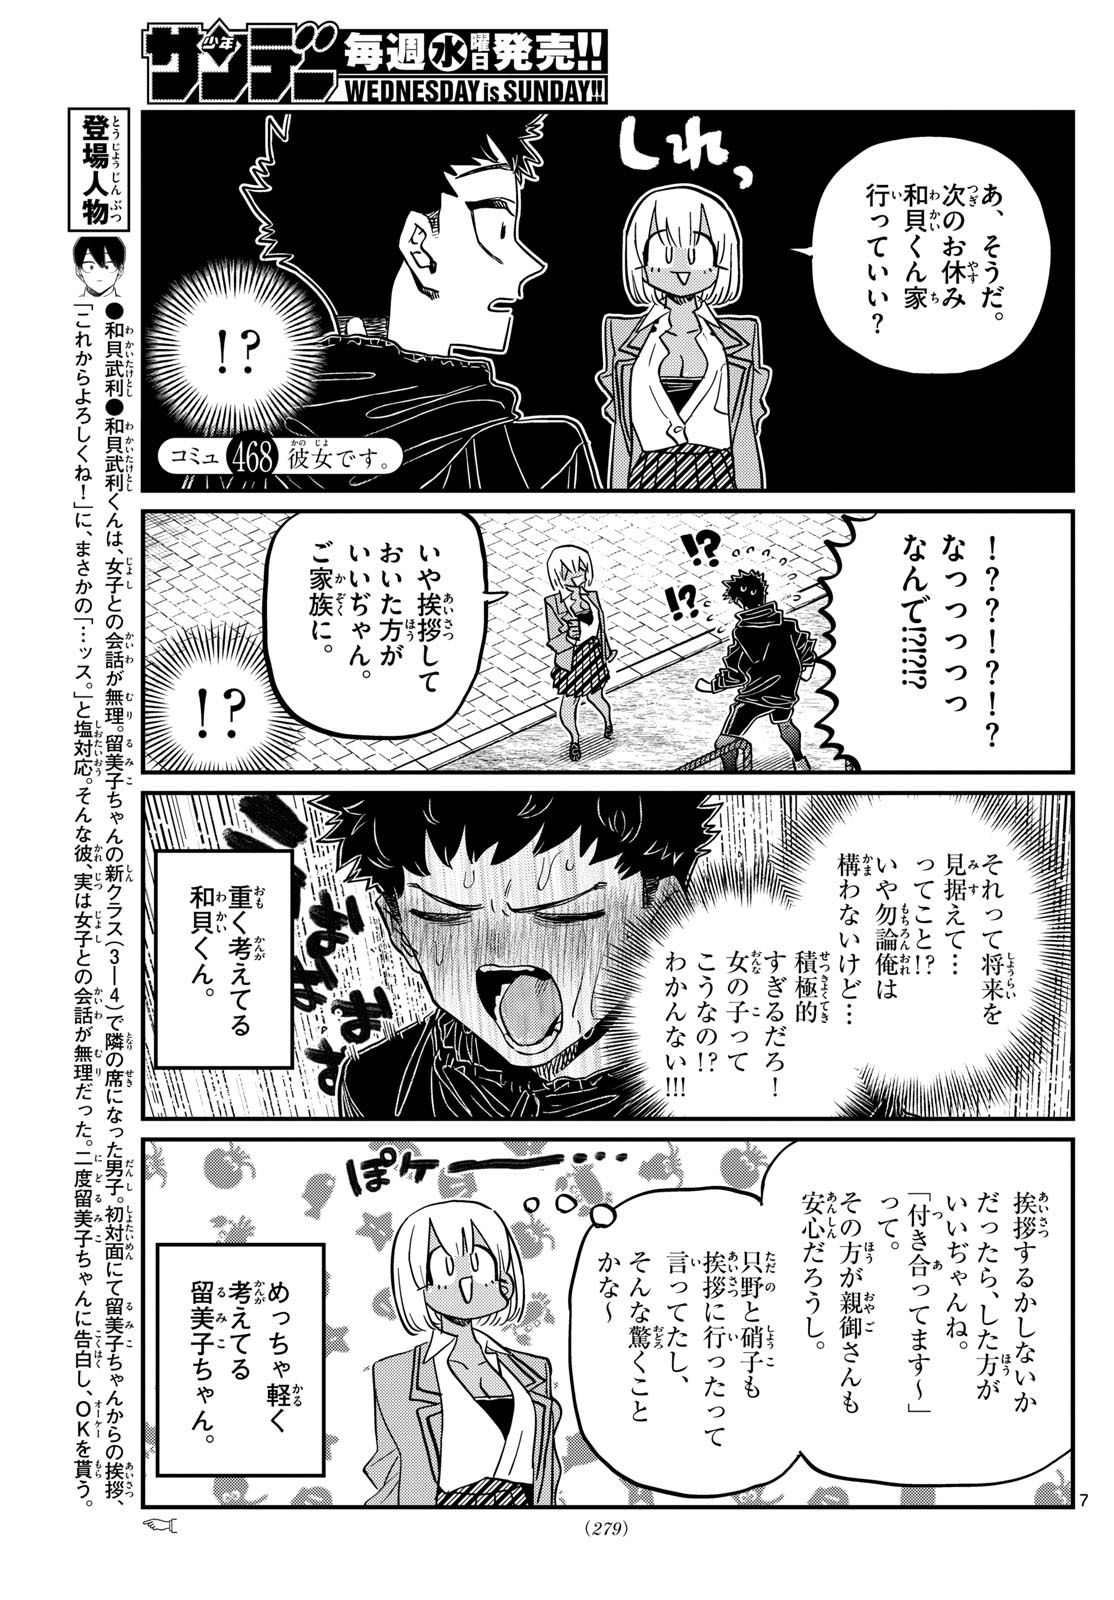 Komi-san wa Komyushou Desu - Chapter 468 - Page 1